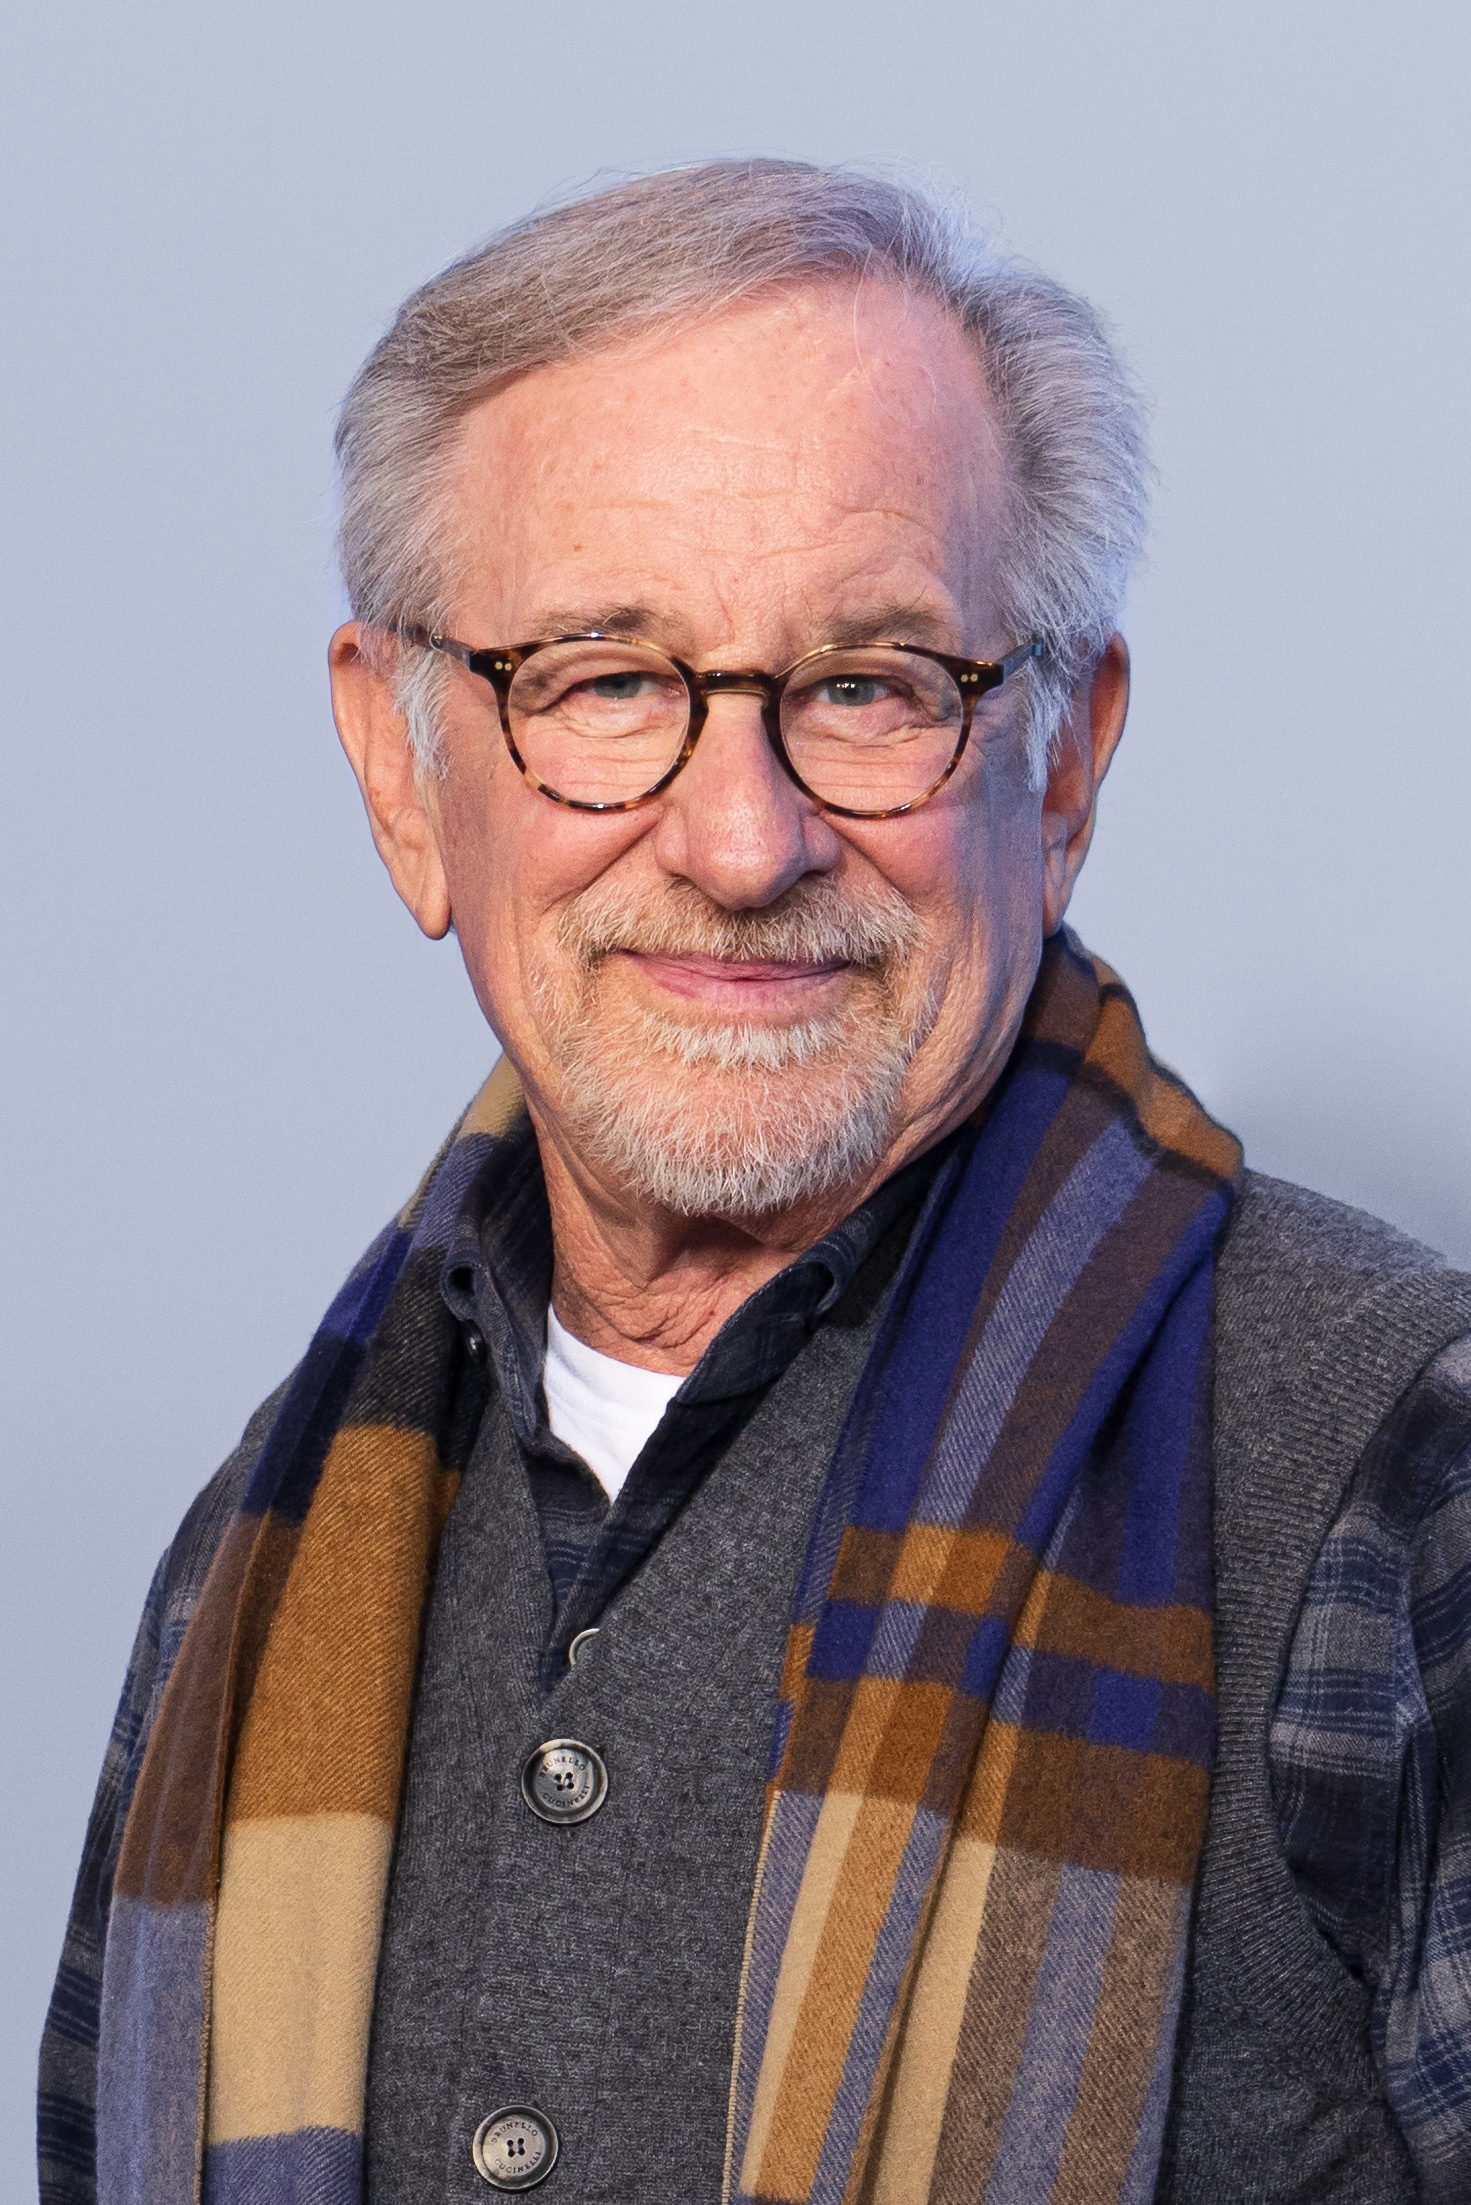 auteur Steven Spielberg de la citation Quand j'étais enfant, il n'y avait pas de collaboration; C'est vous avec une caméra dirigeant vos amis. Mais en tant qu'adulte, le cinéma consiste à apprécier les talents des personnes dont vous vous entourez et à savoir que vous n'auriez jamais pu faire de ces films par vous-même.